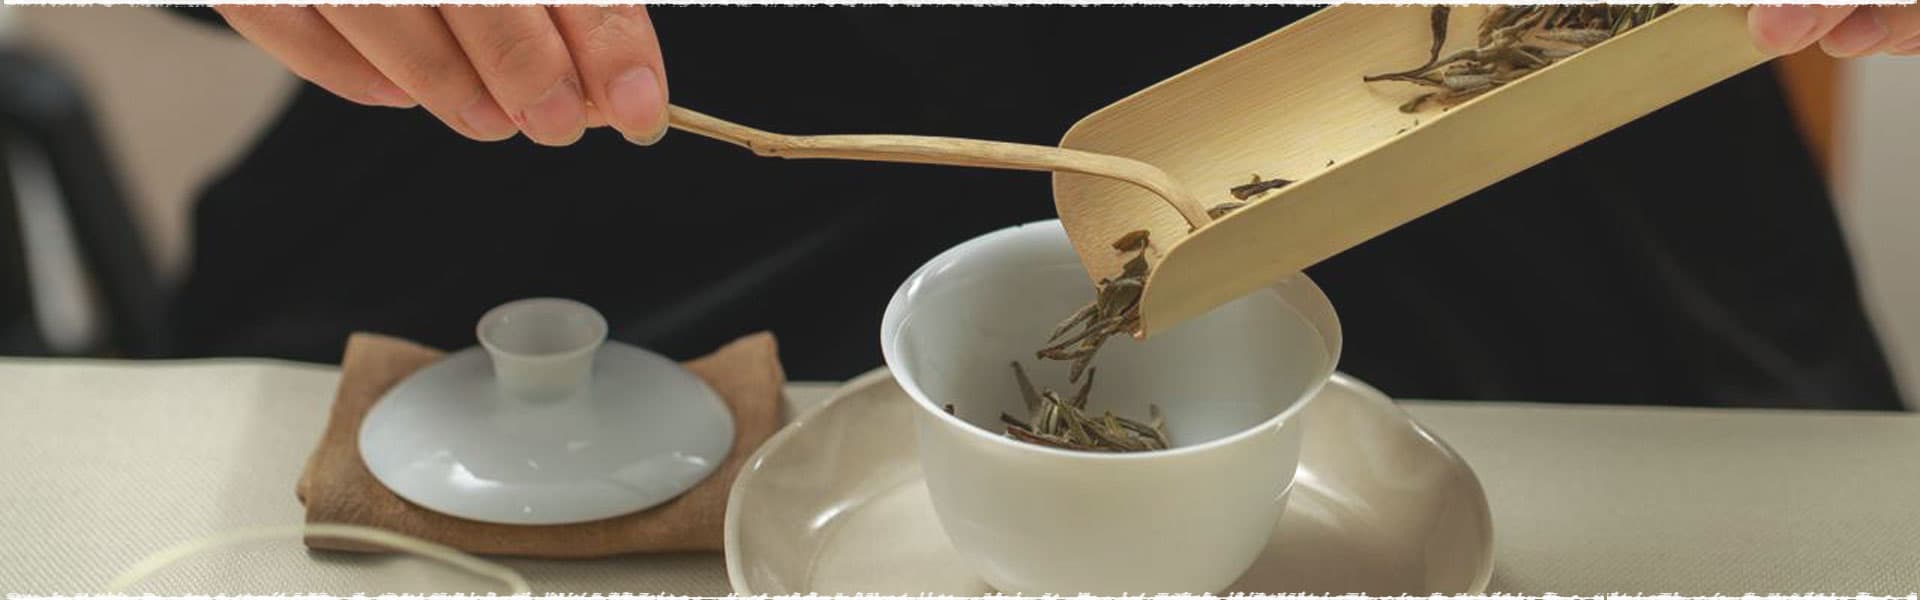 How to Brew Fuding White Tea